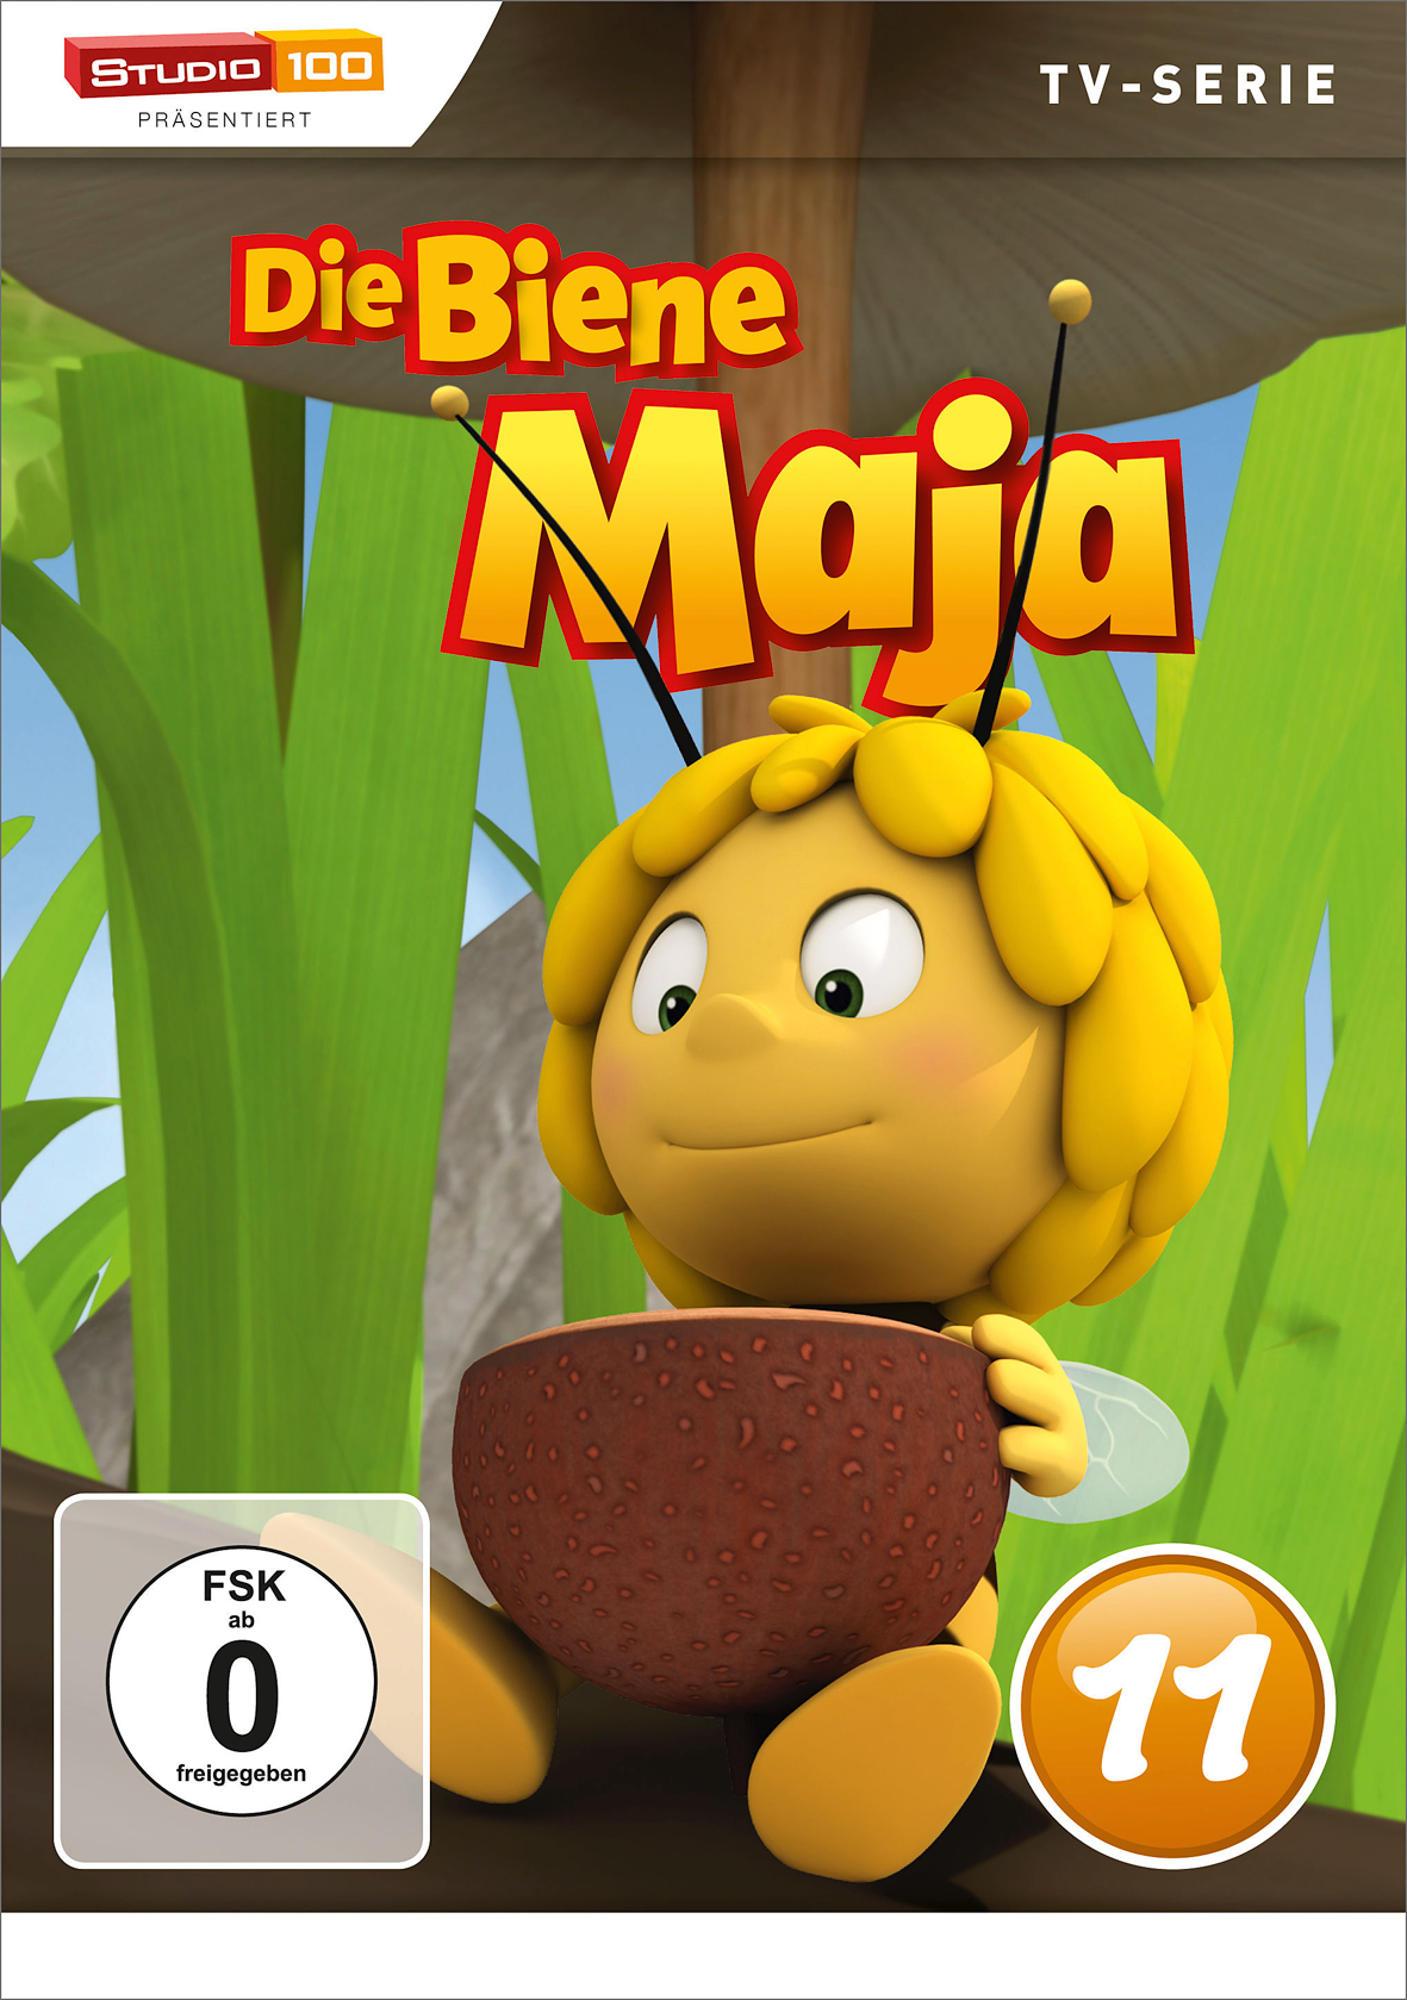 Die Biene Maja 3D - 11 DVD DVD